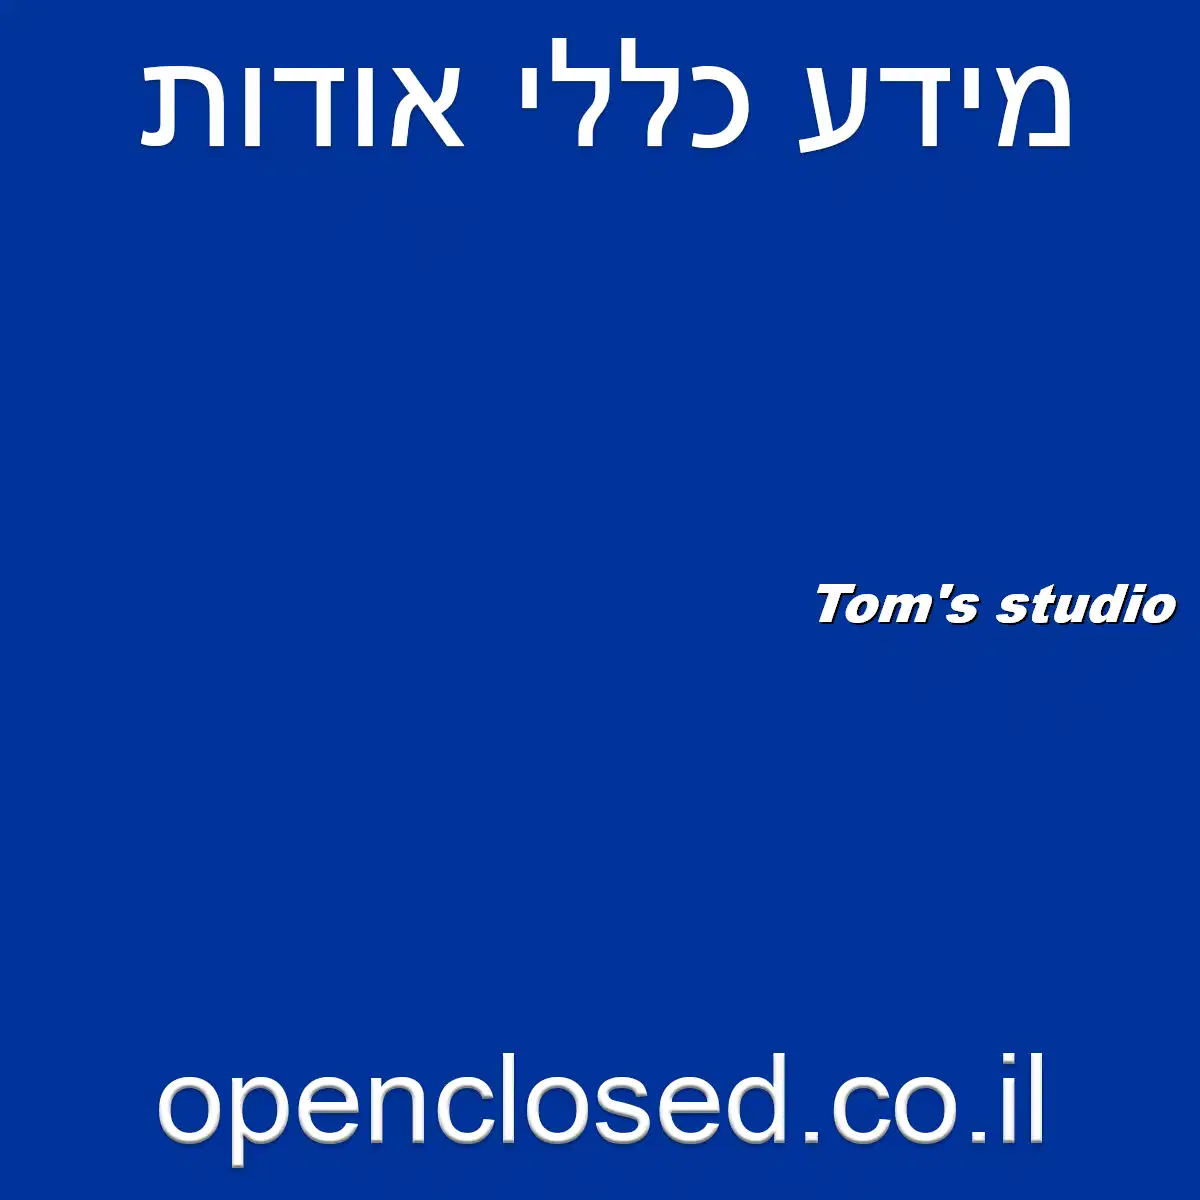 Tom’s studio